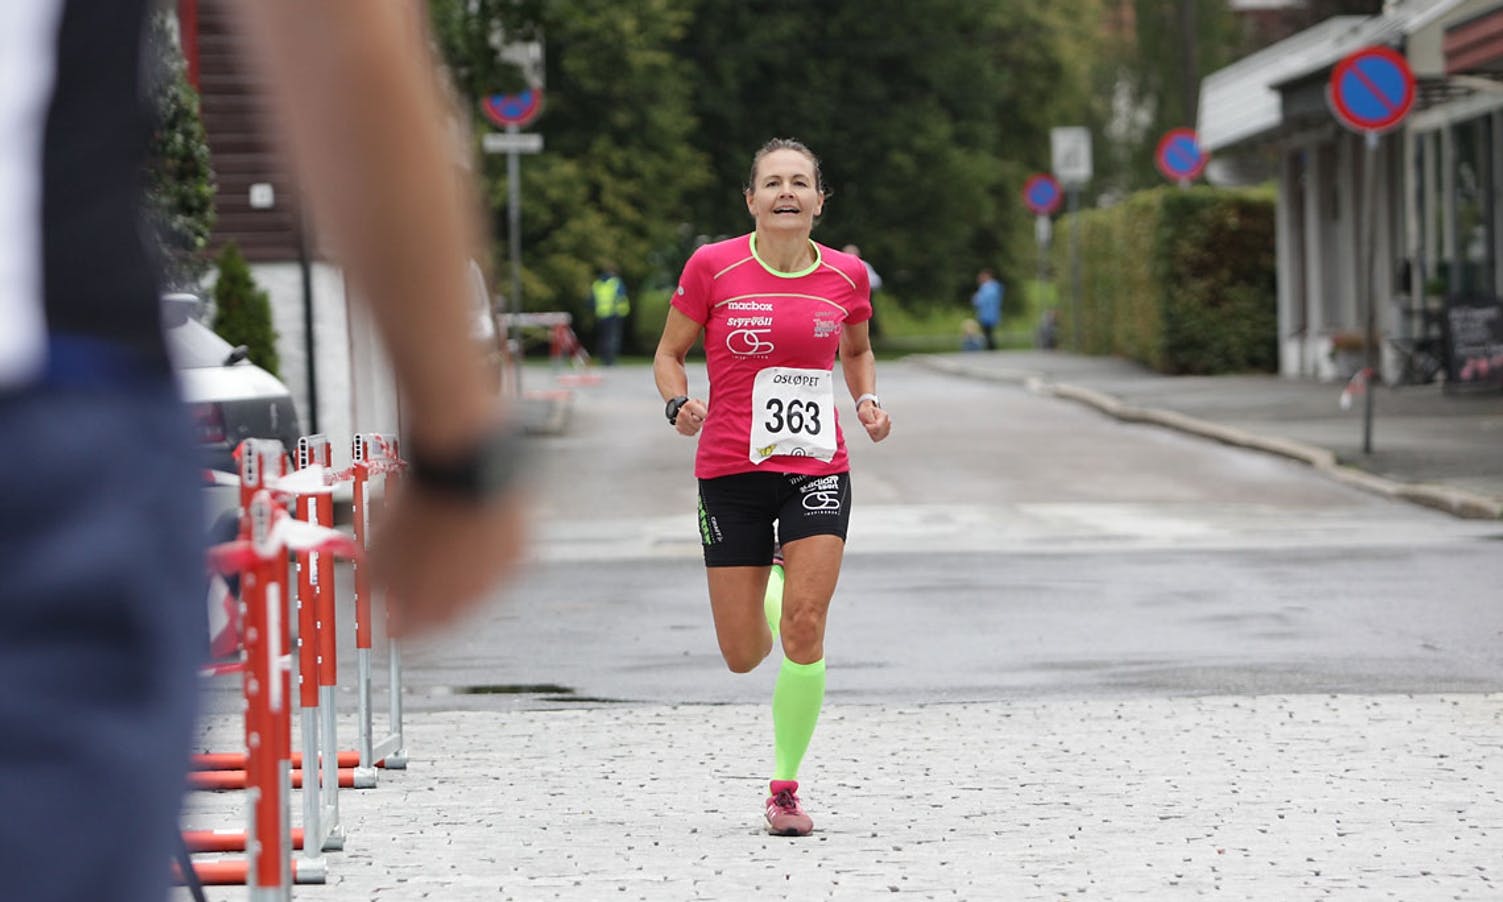 Cecilie Hagen persa og vann kvinneklassen på 29.00. (Foto: KVB)